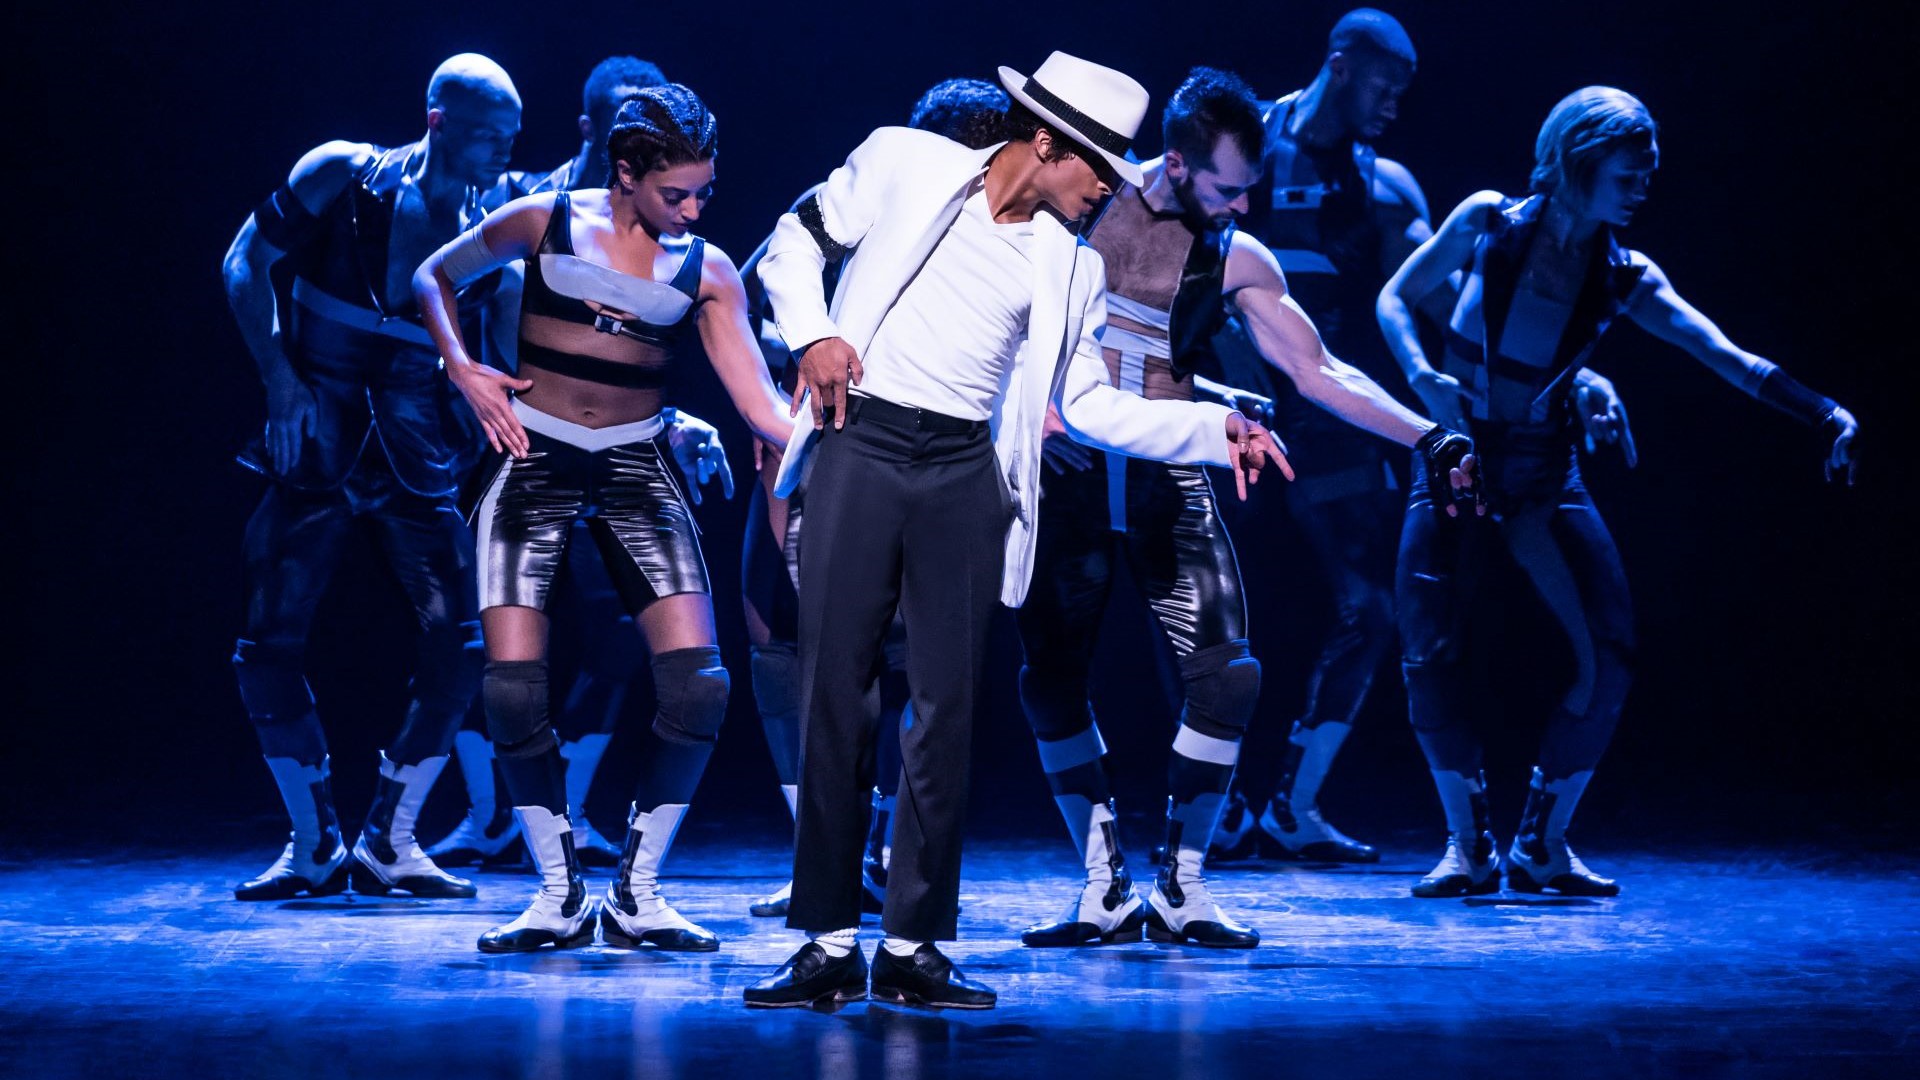 Szenenbild von MJ – Das Michael Jackson Musical, eine Gruppe von Menschen tanzt auf der Bühne.